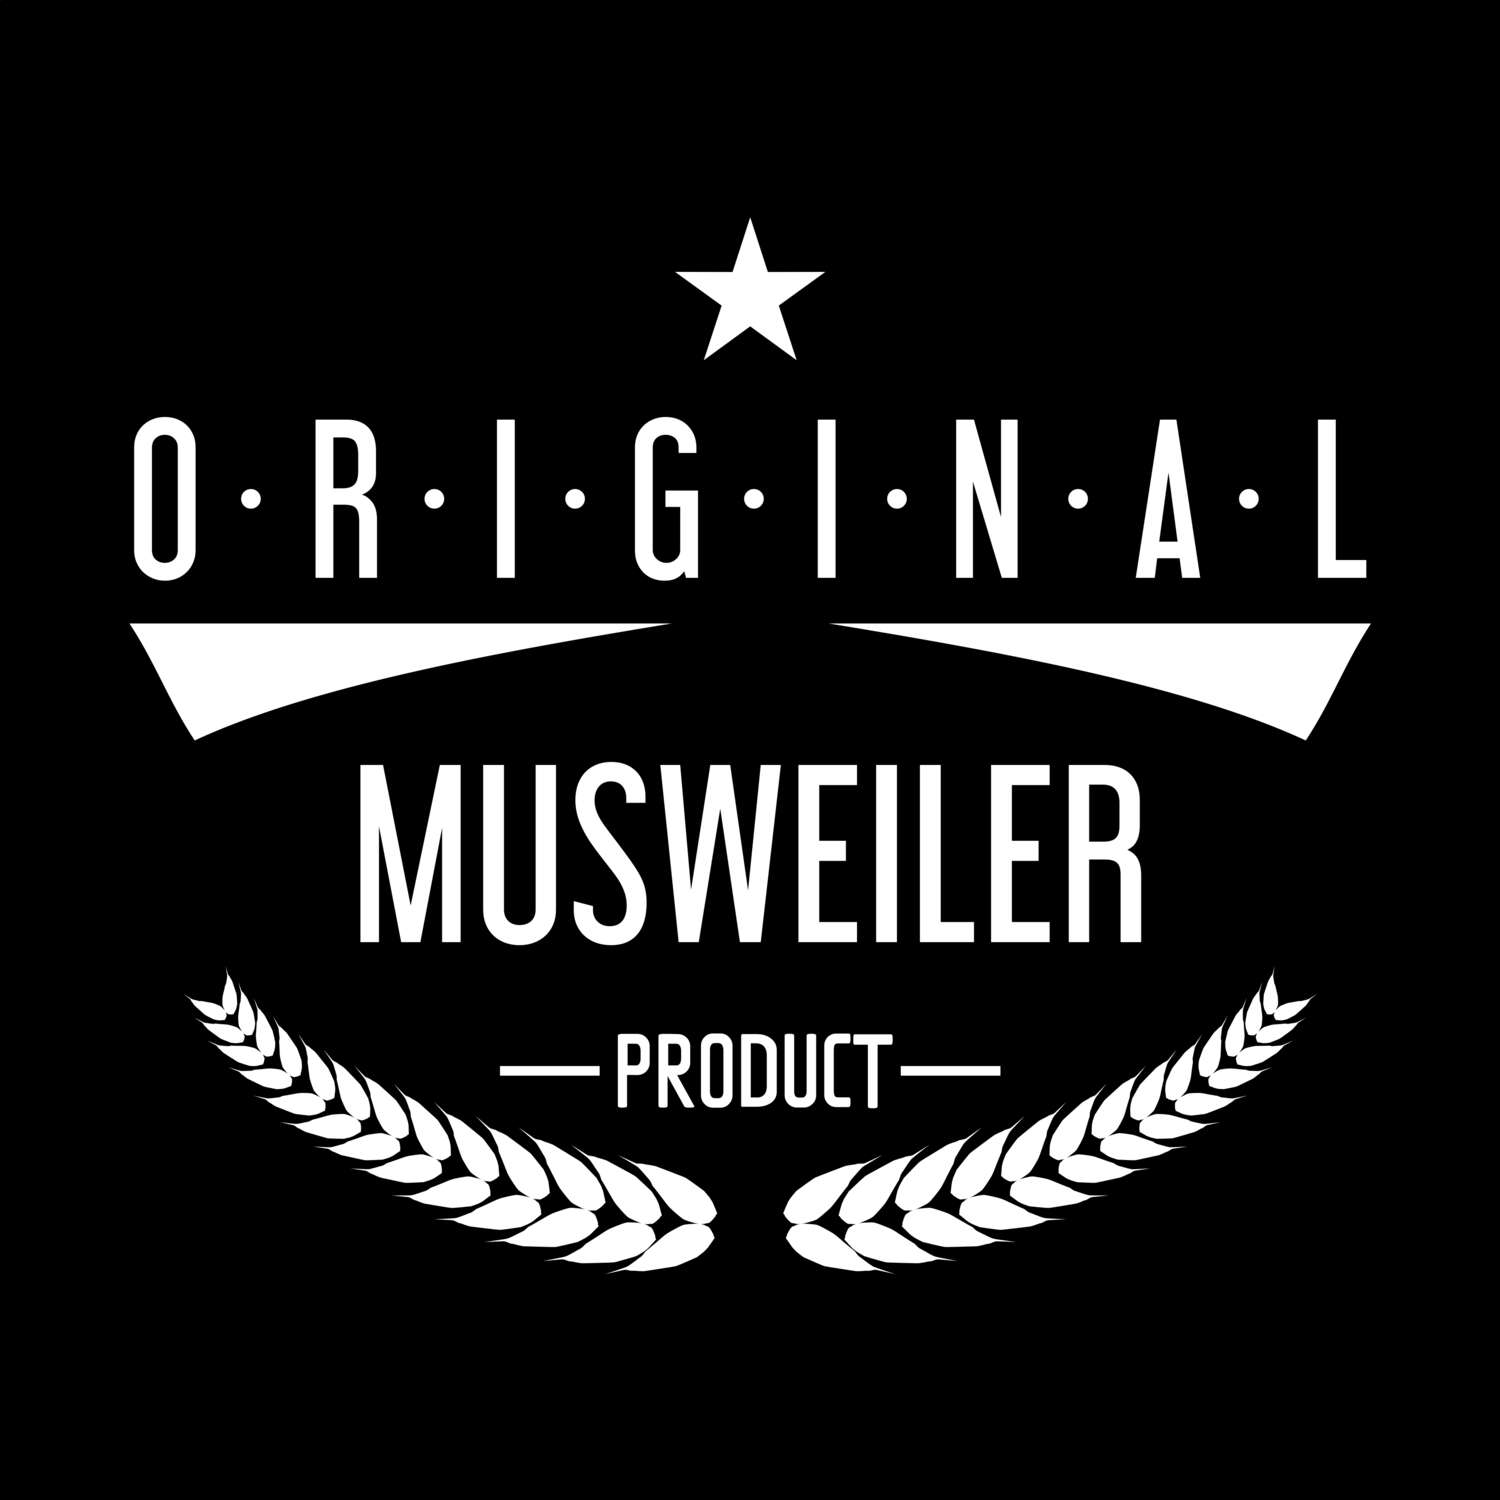 Musweiler T-Shirt »Original Product«